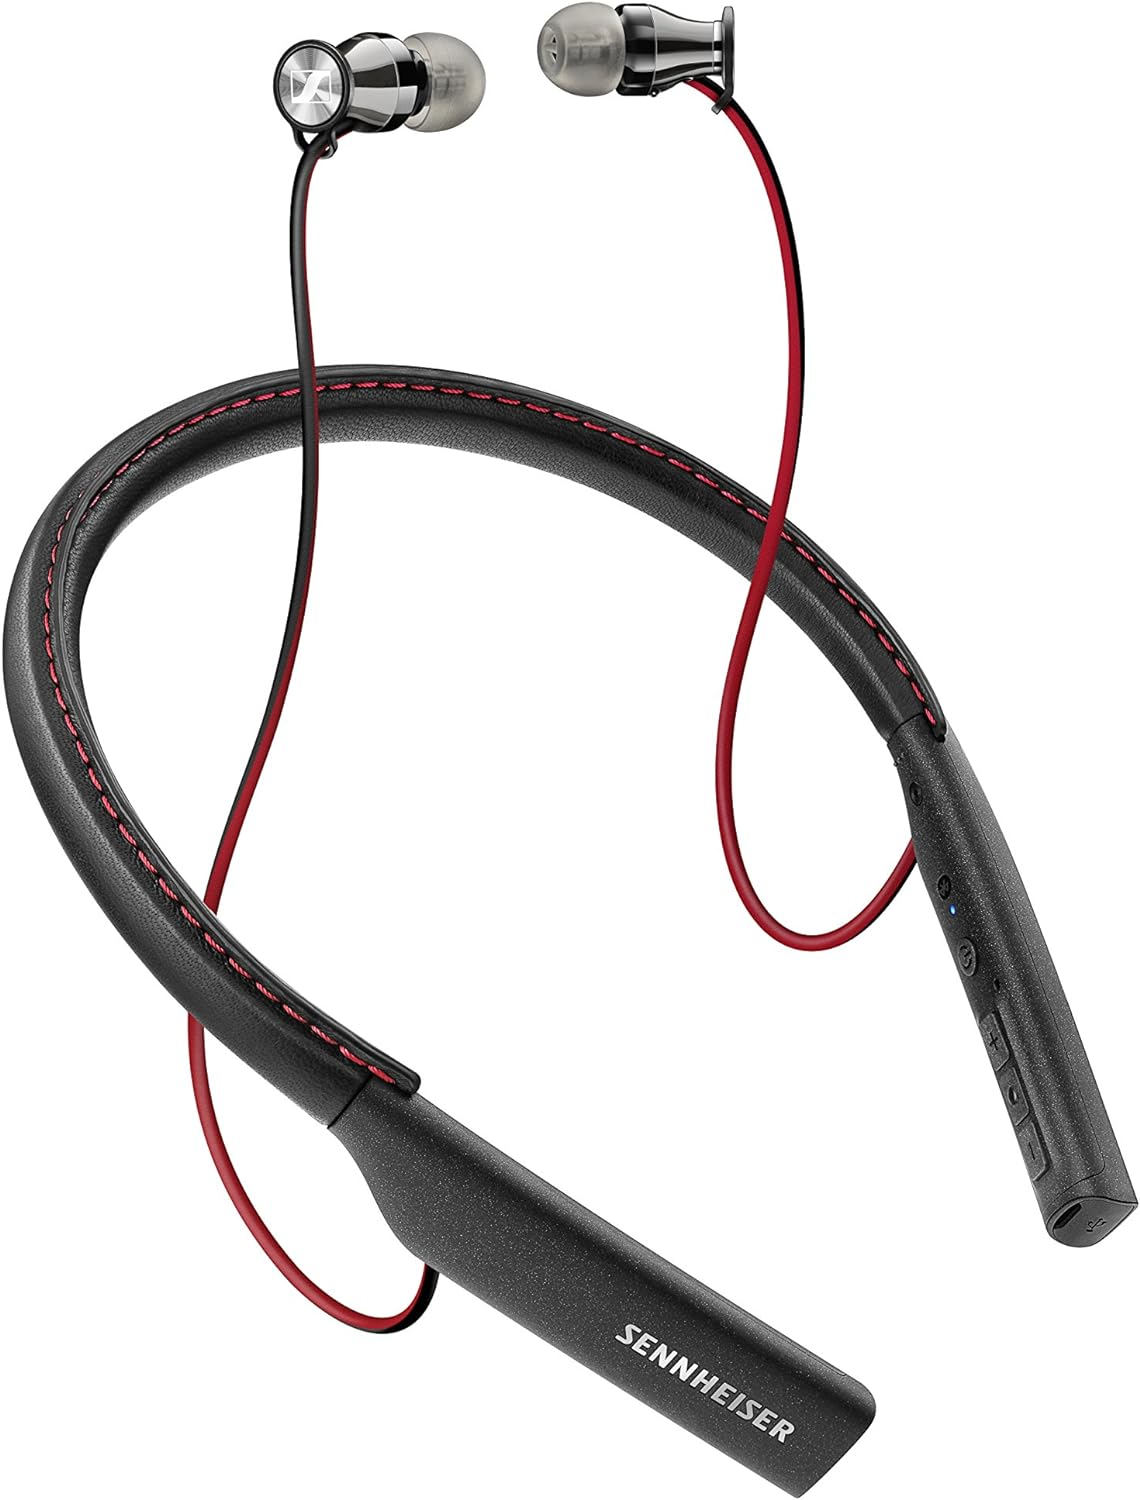 Sennheiser M2 IEBT Momentum In-Ear Wireless Headphones, Black Refurbished